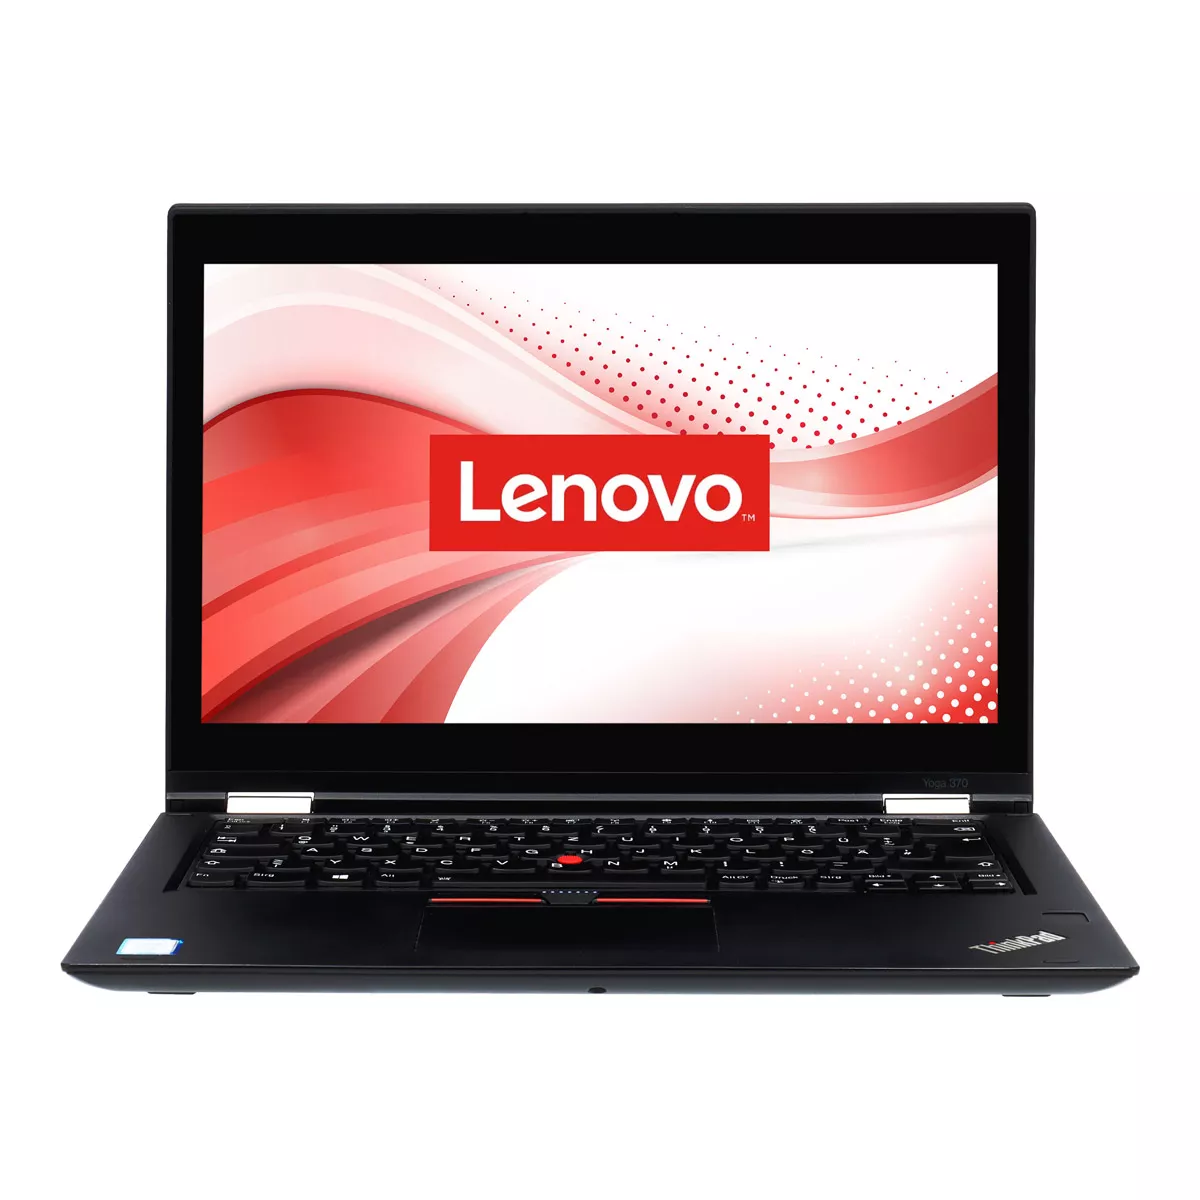 Lenovo ThinkPad X380 Yoga Core i7 8550U Full-HD Touch 16 GB DDR4 500 GB M.2 SSD Webcam A+